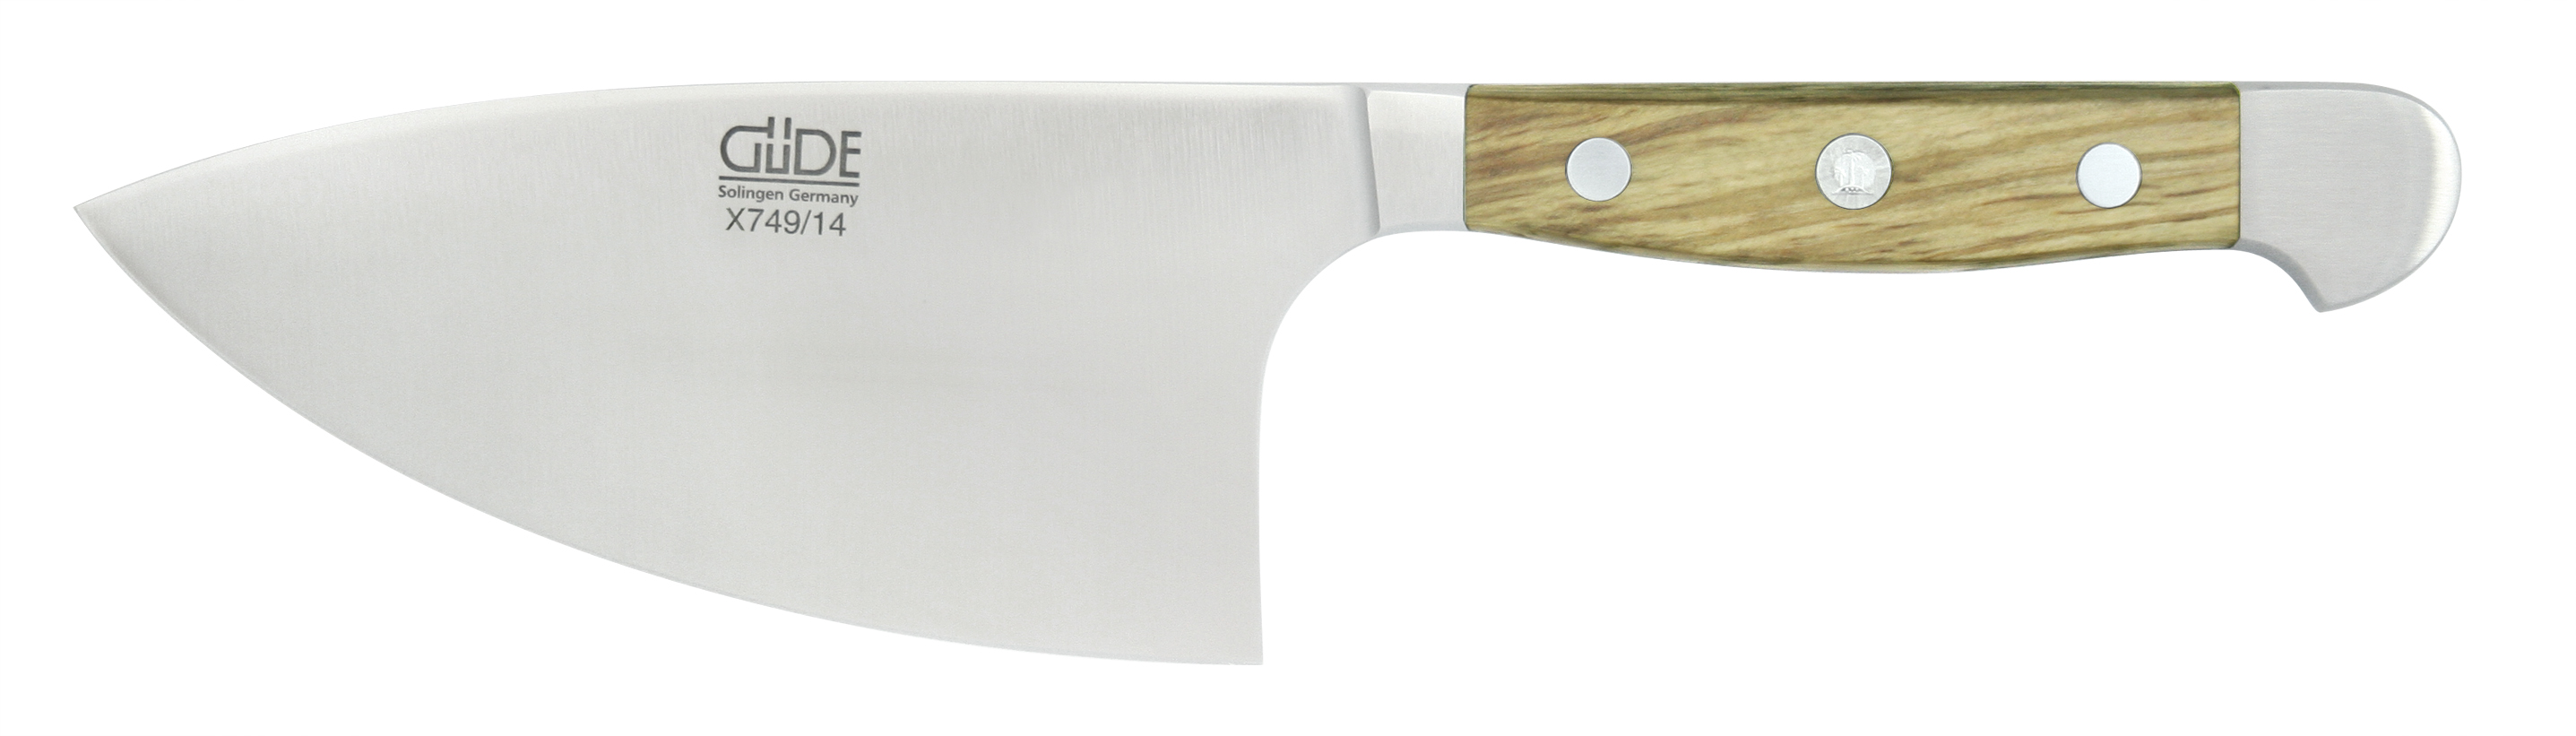 Güde Alpha Olive Kräutermesser Shark 14 cm / CVM-Messerstahl mit Griffschalen aus Olivenholz